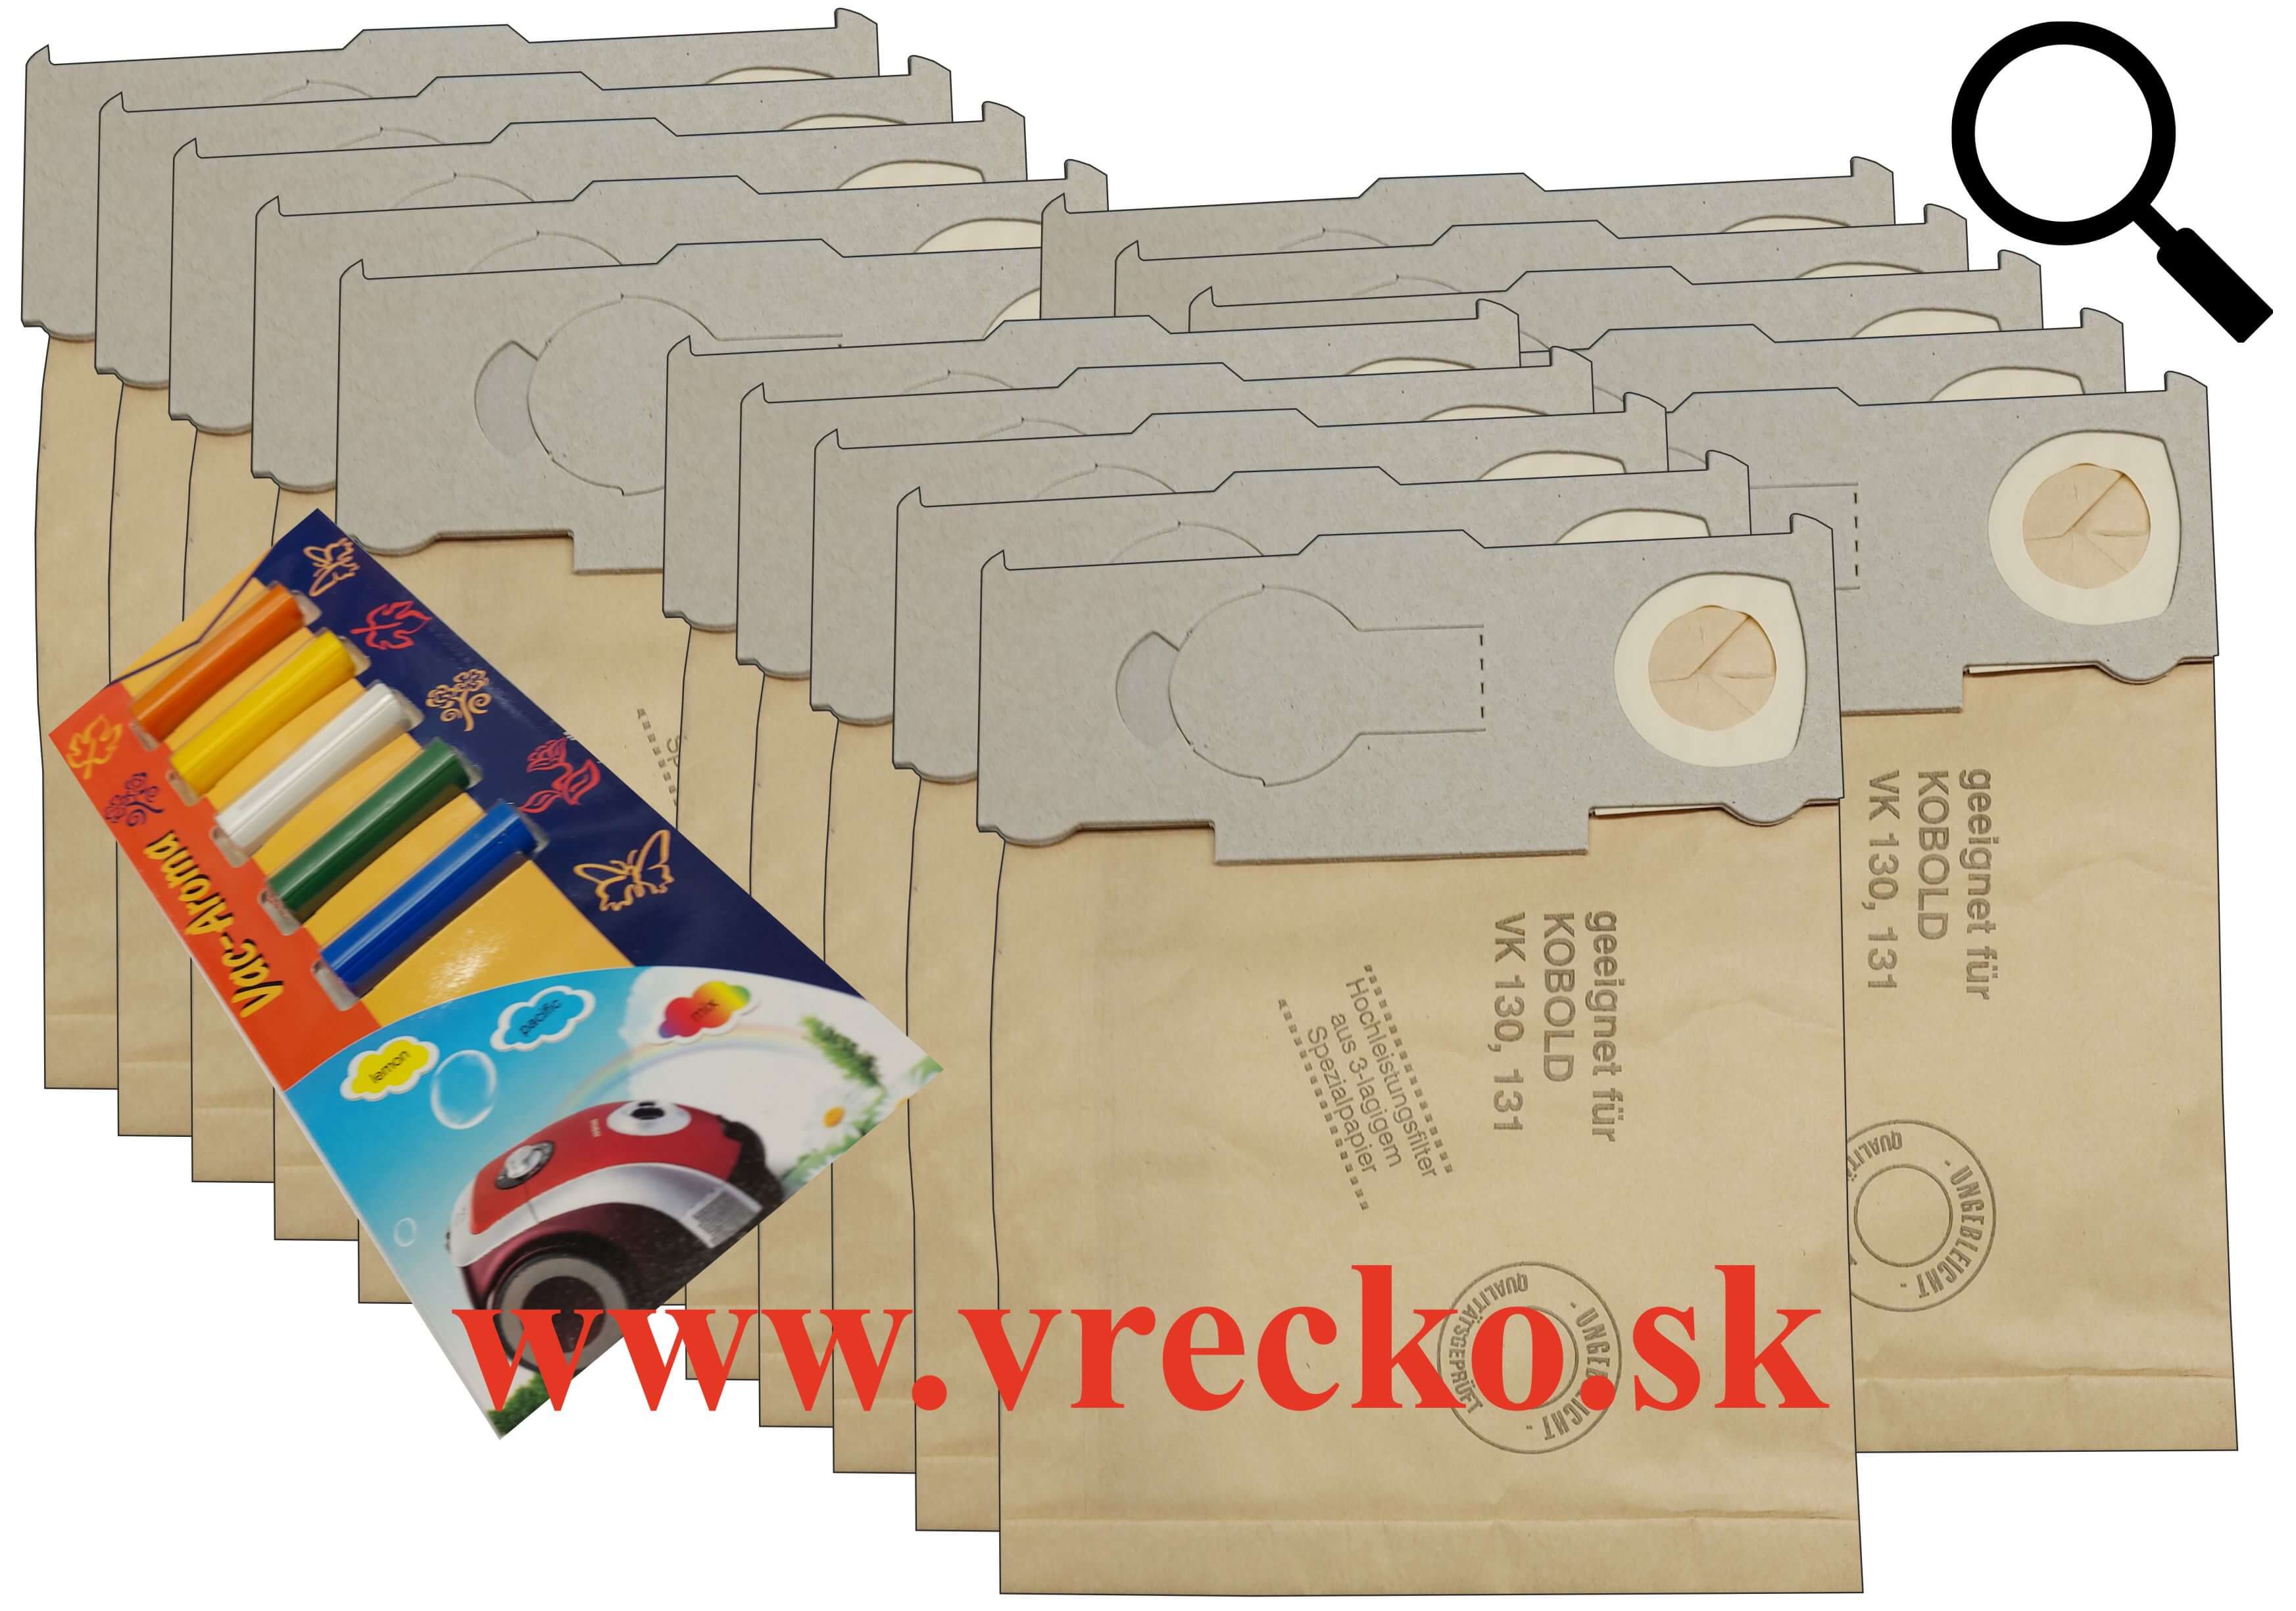 Vorwerk Folleto VK 132 - XL zvýhodnené balenie papierových vreciek do vysávača + 5 ks vôní do vysávačov MIX ZDARMA za cenu 3,99 (celkovo vreciek 15 ks)